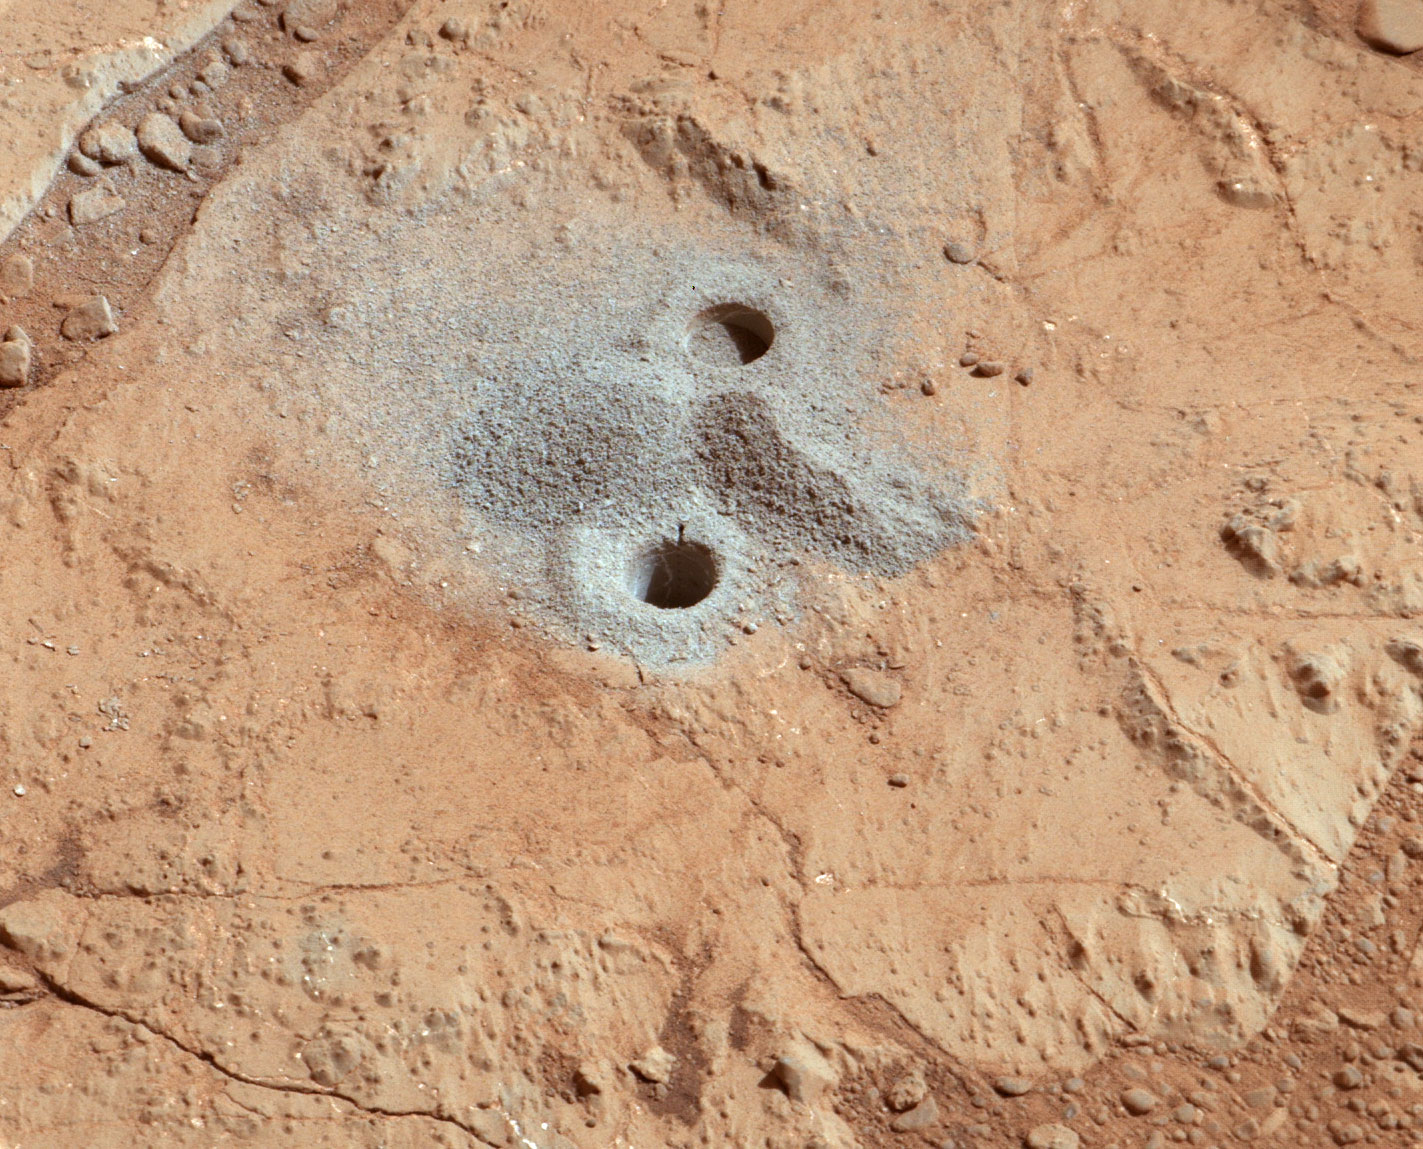 Le premier forage de Curiosity a permis de démontrer que dans son passé, la planète Mars a été habitable. Mais deux questions restent en suspens : quand et durant combien de temps ? © Nasa/JPL-Caltech/MSSS